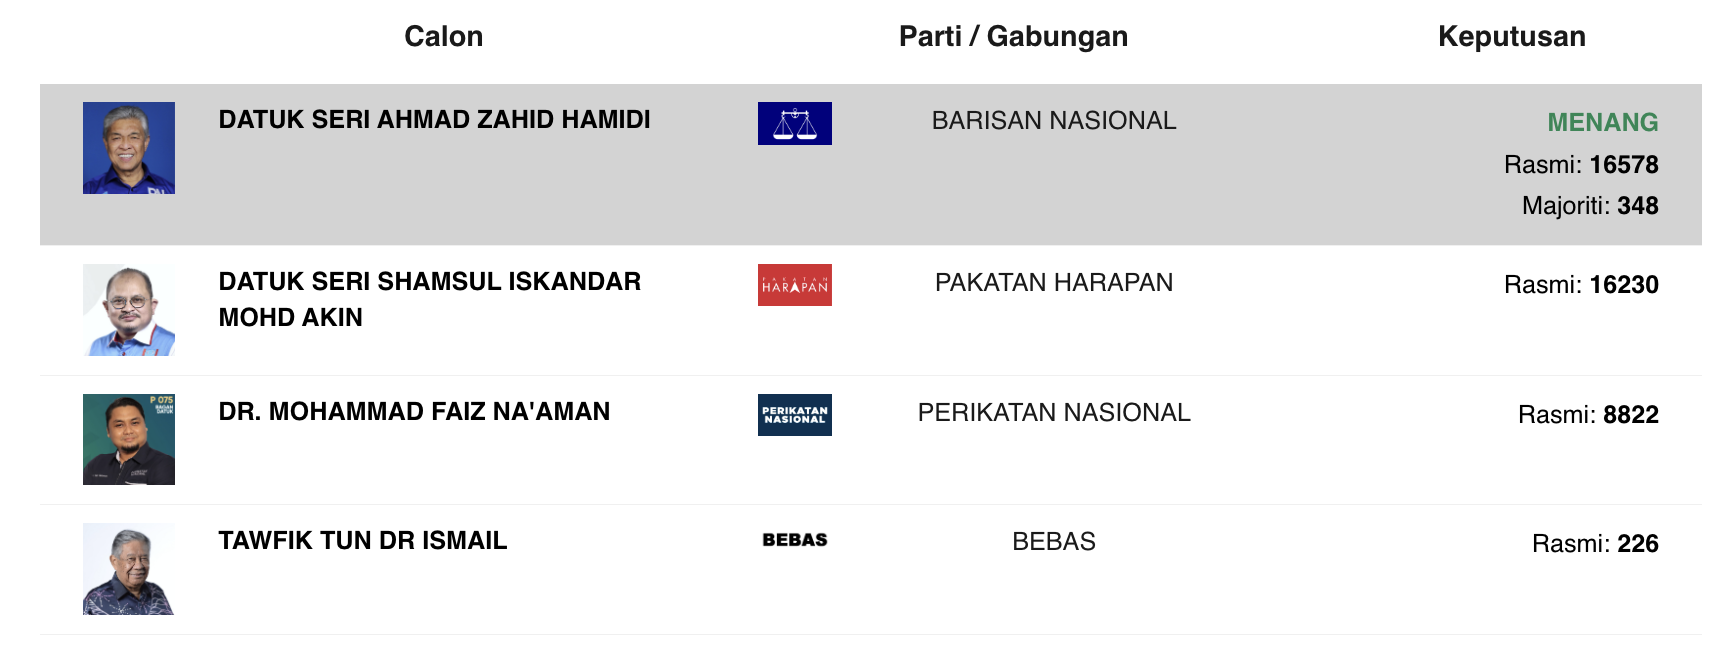 #GE15 : Zahid remporte une courte victoire à Bagan Datuk avec une marge de 348 %